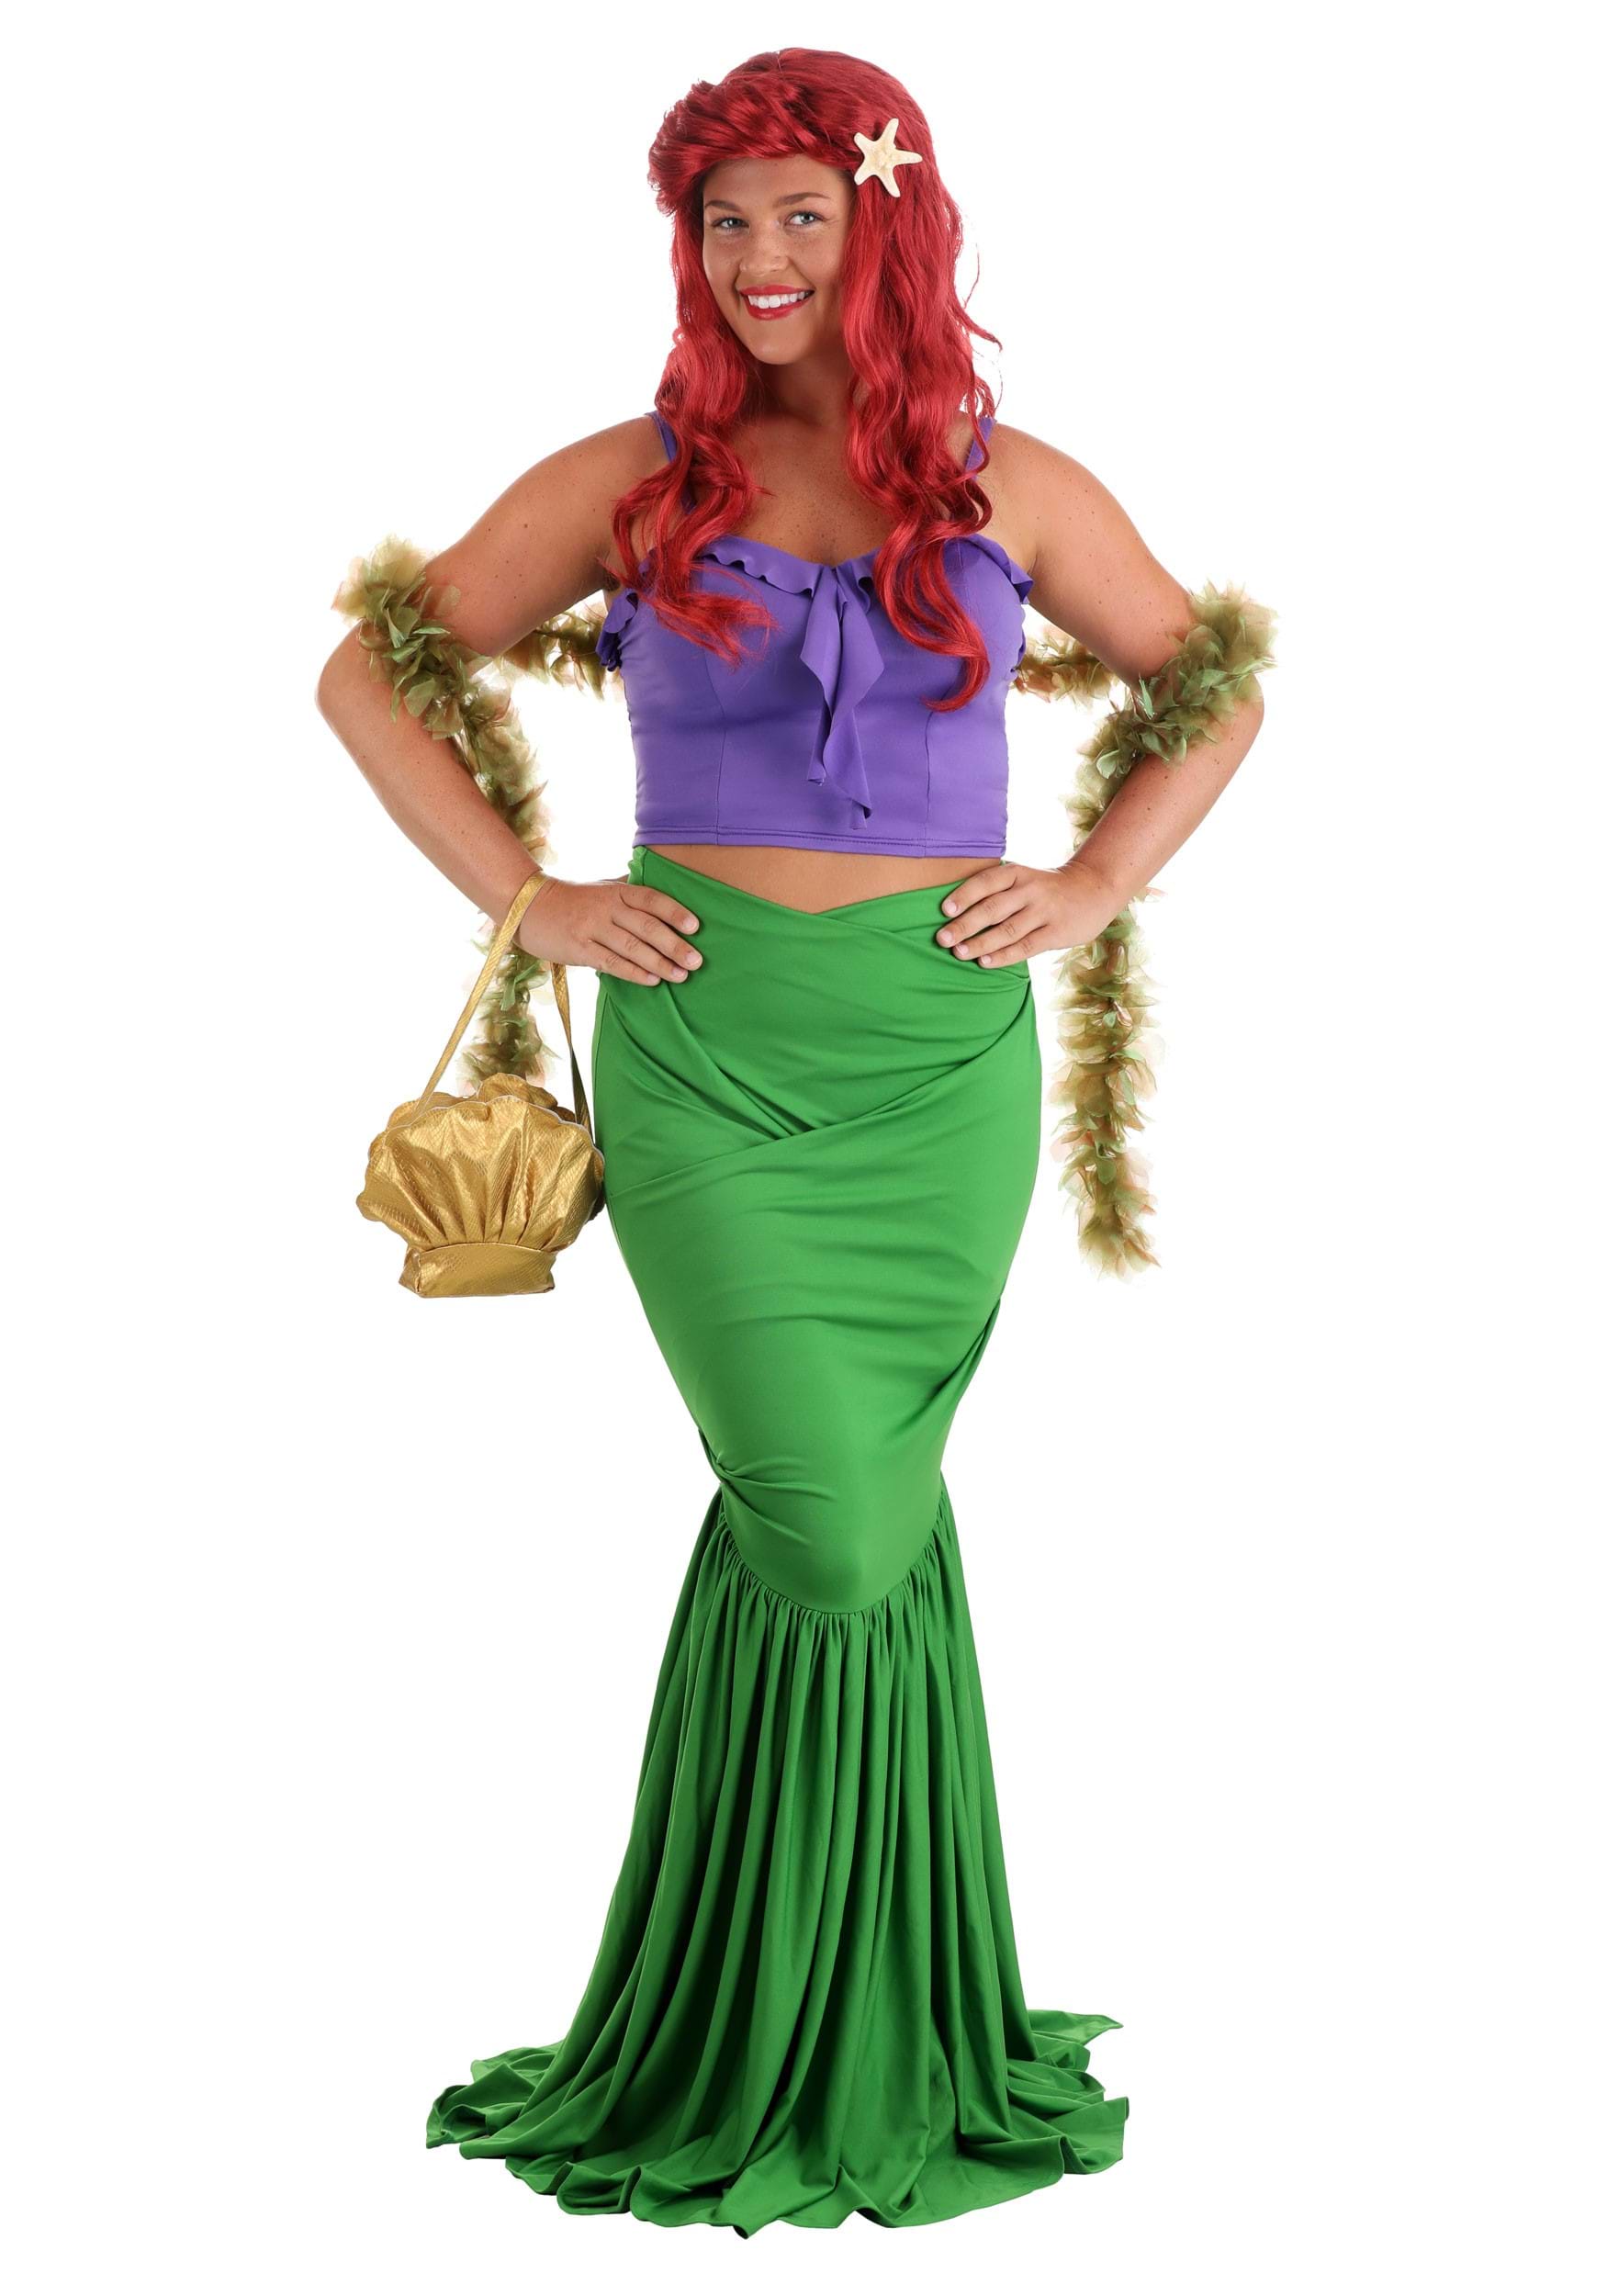 https://images.halloweencostumes.com.mx/products/32722/2-1-184835/adult-mermaid-costume-alt-1.JPG